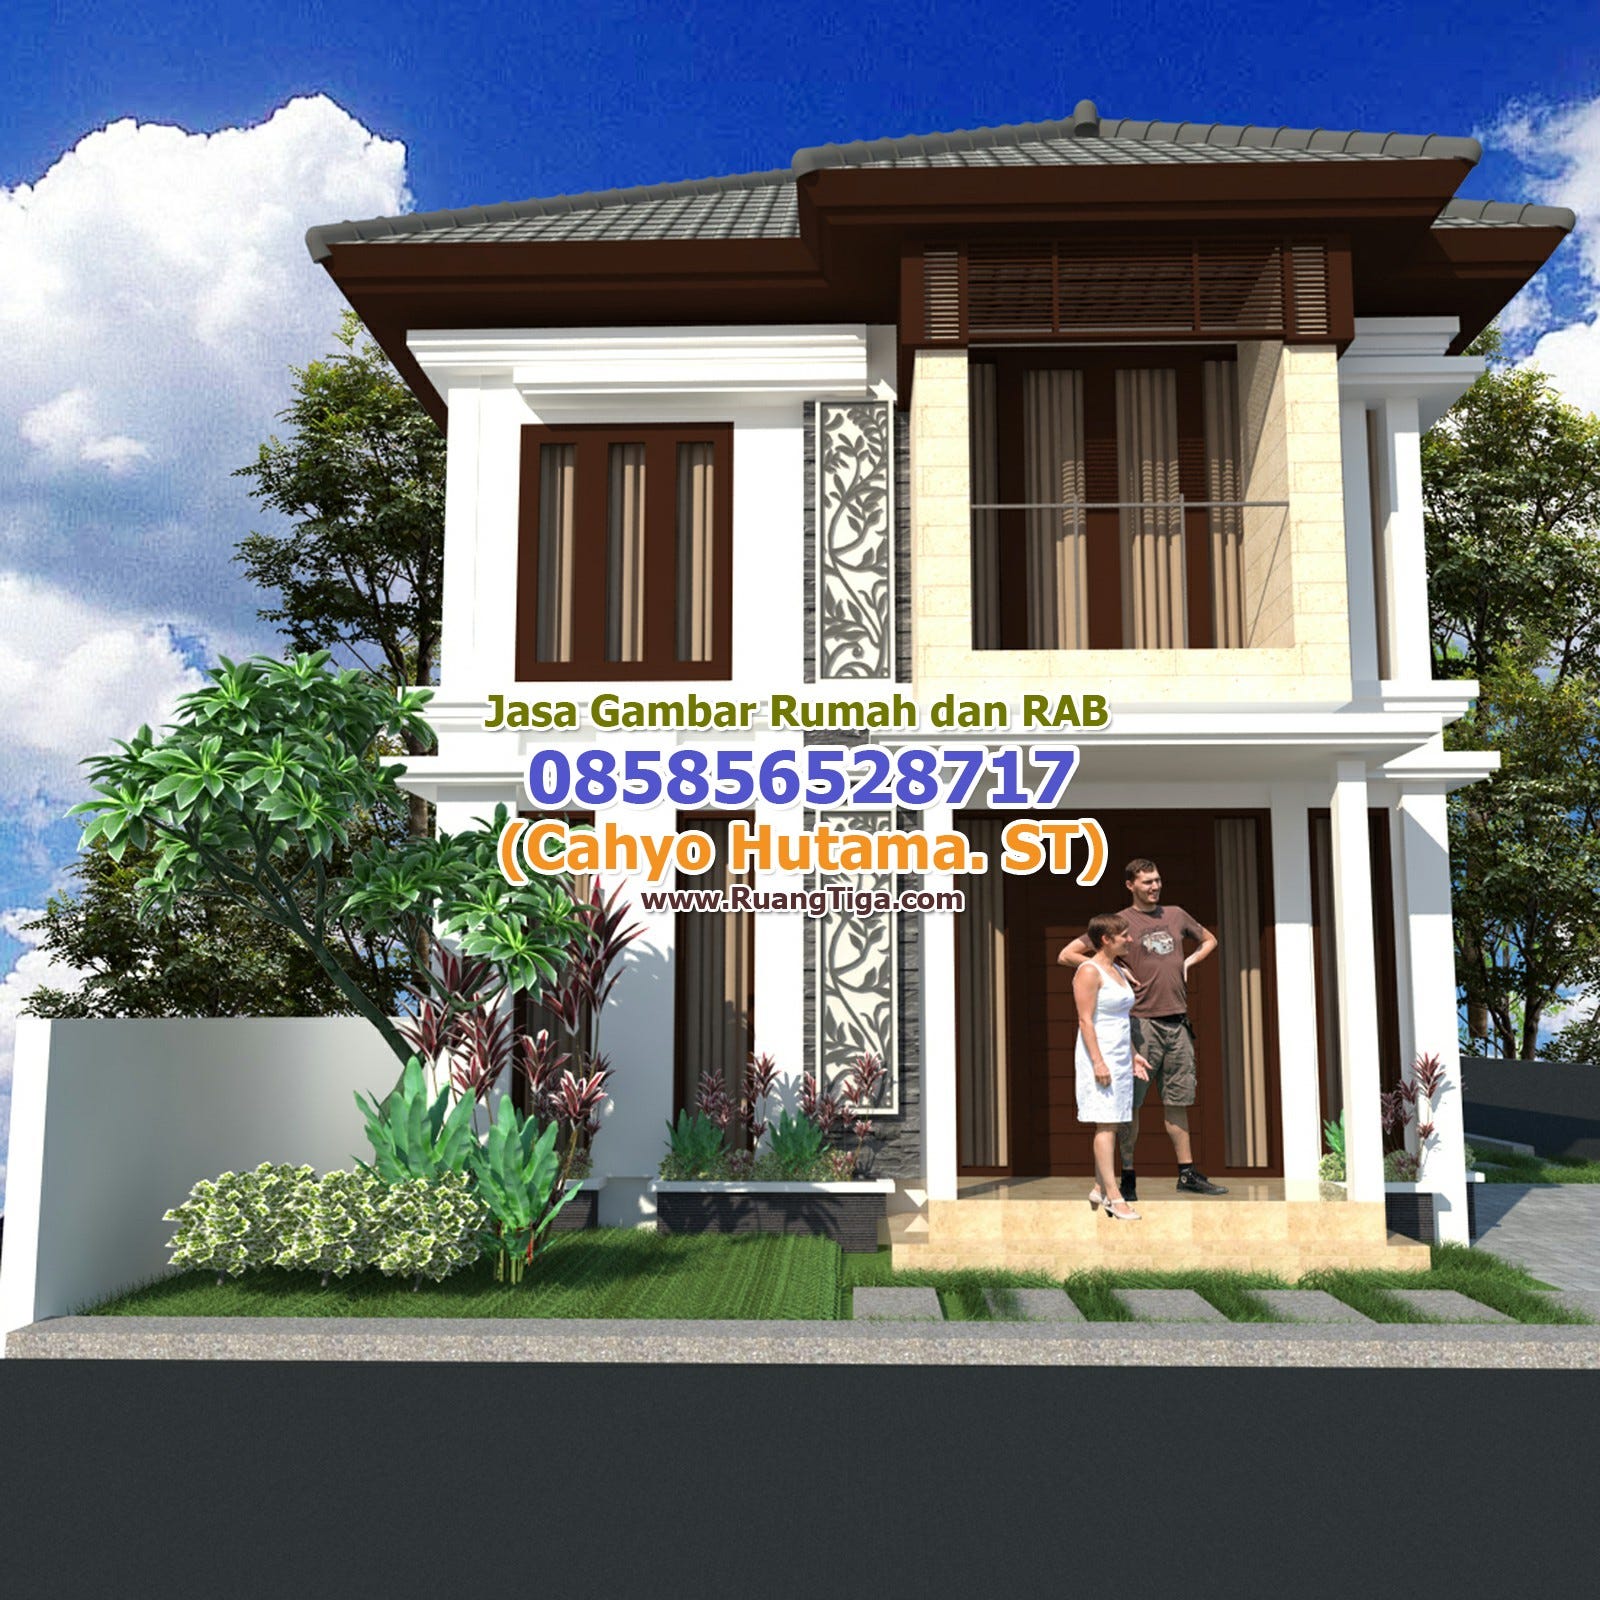 085856528717 Jasa Gambar Desain Rumah Murah Jasa Gambar Gedung